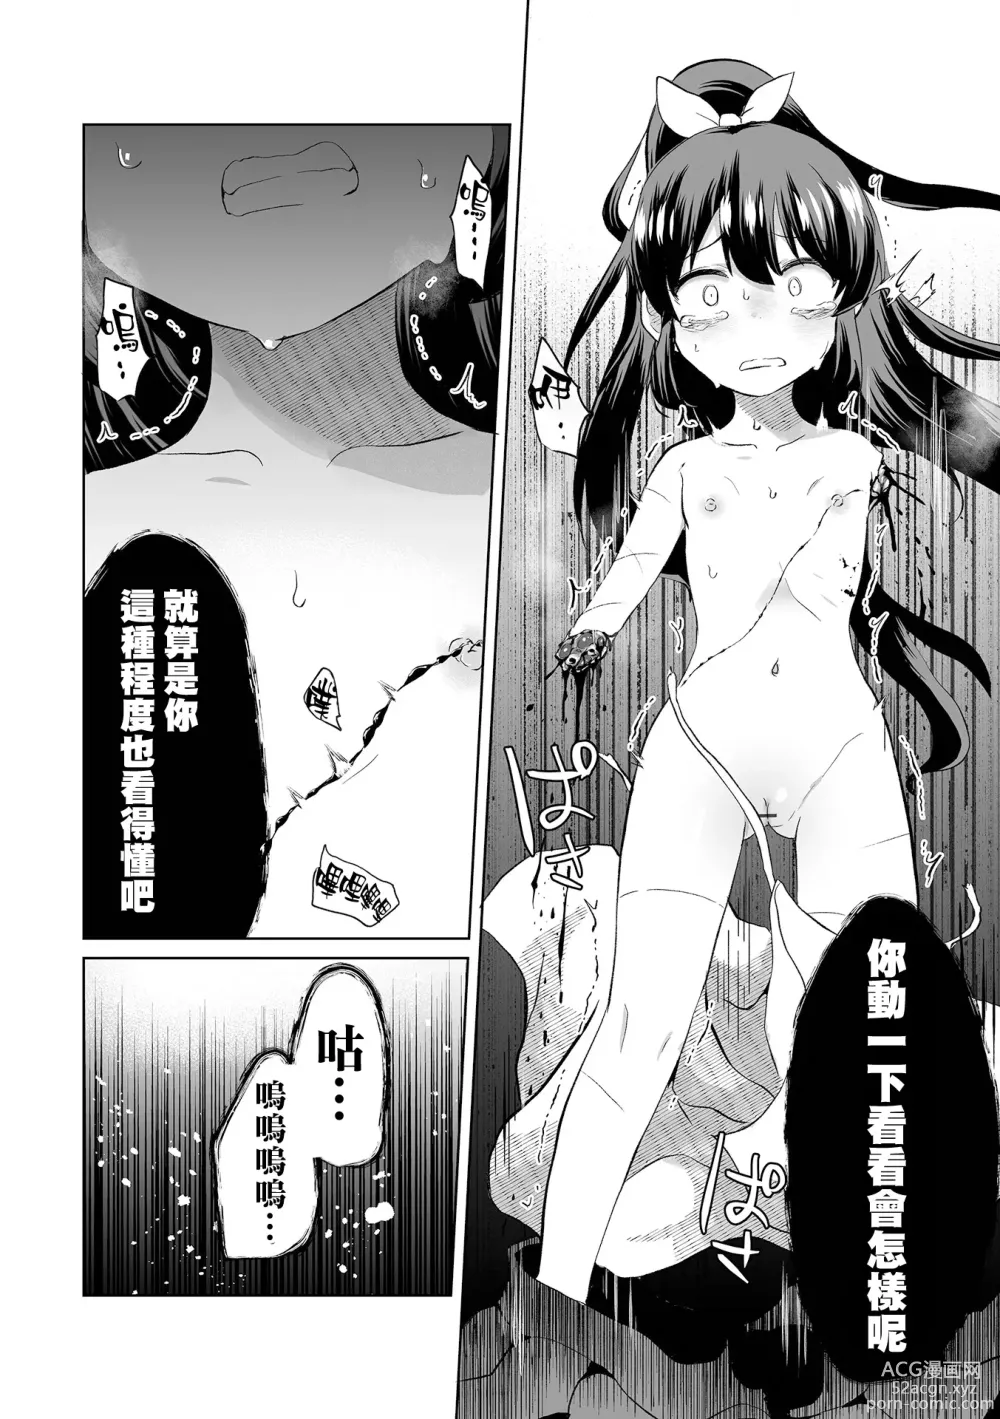 Page 7 of manga Ouka Chiru